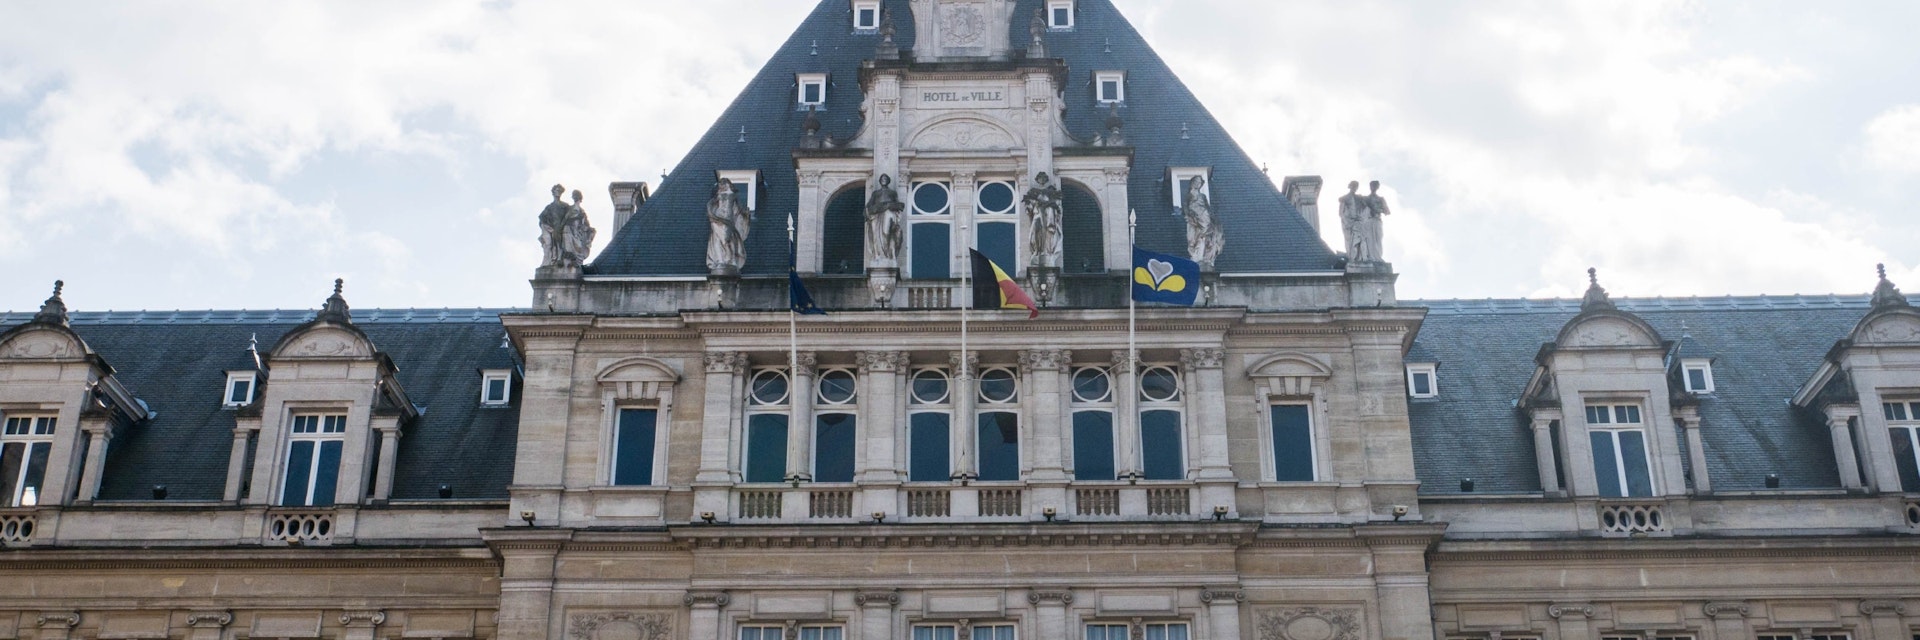 St-Gilles Town Hall facade